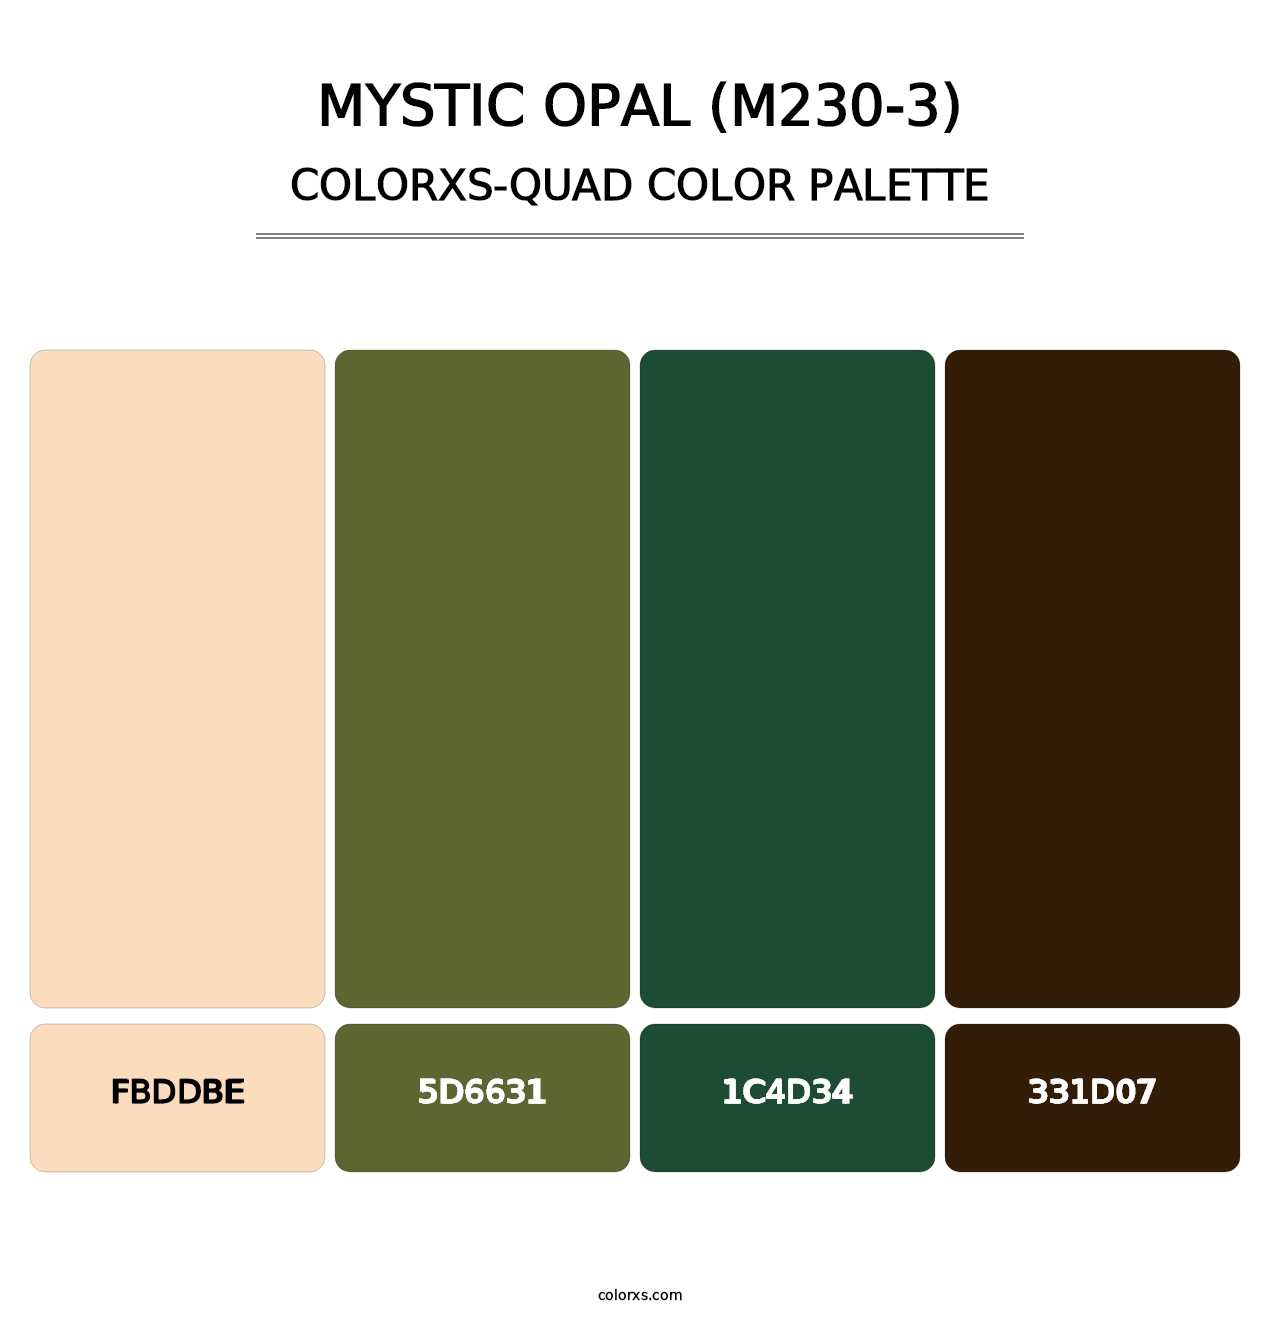 Mystic Opal (M230-3) - Colorxs Quad Palette